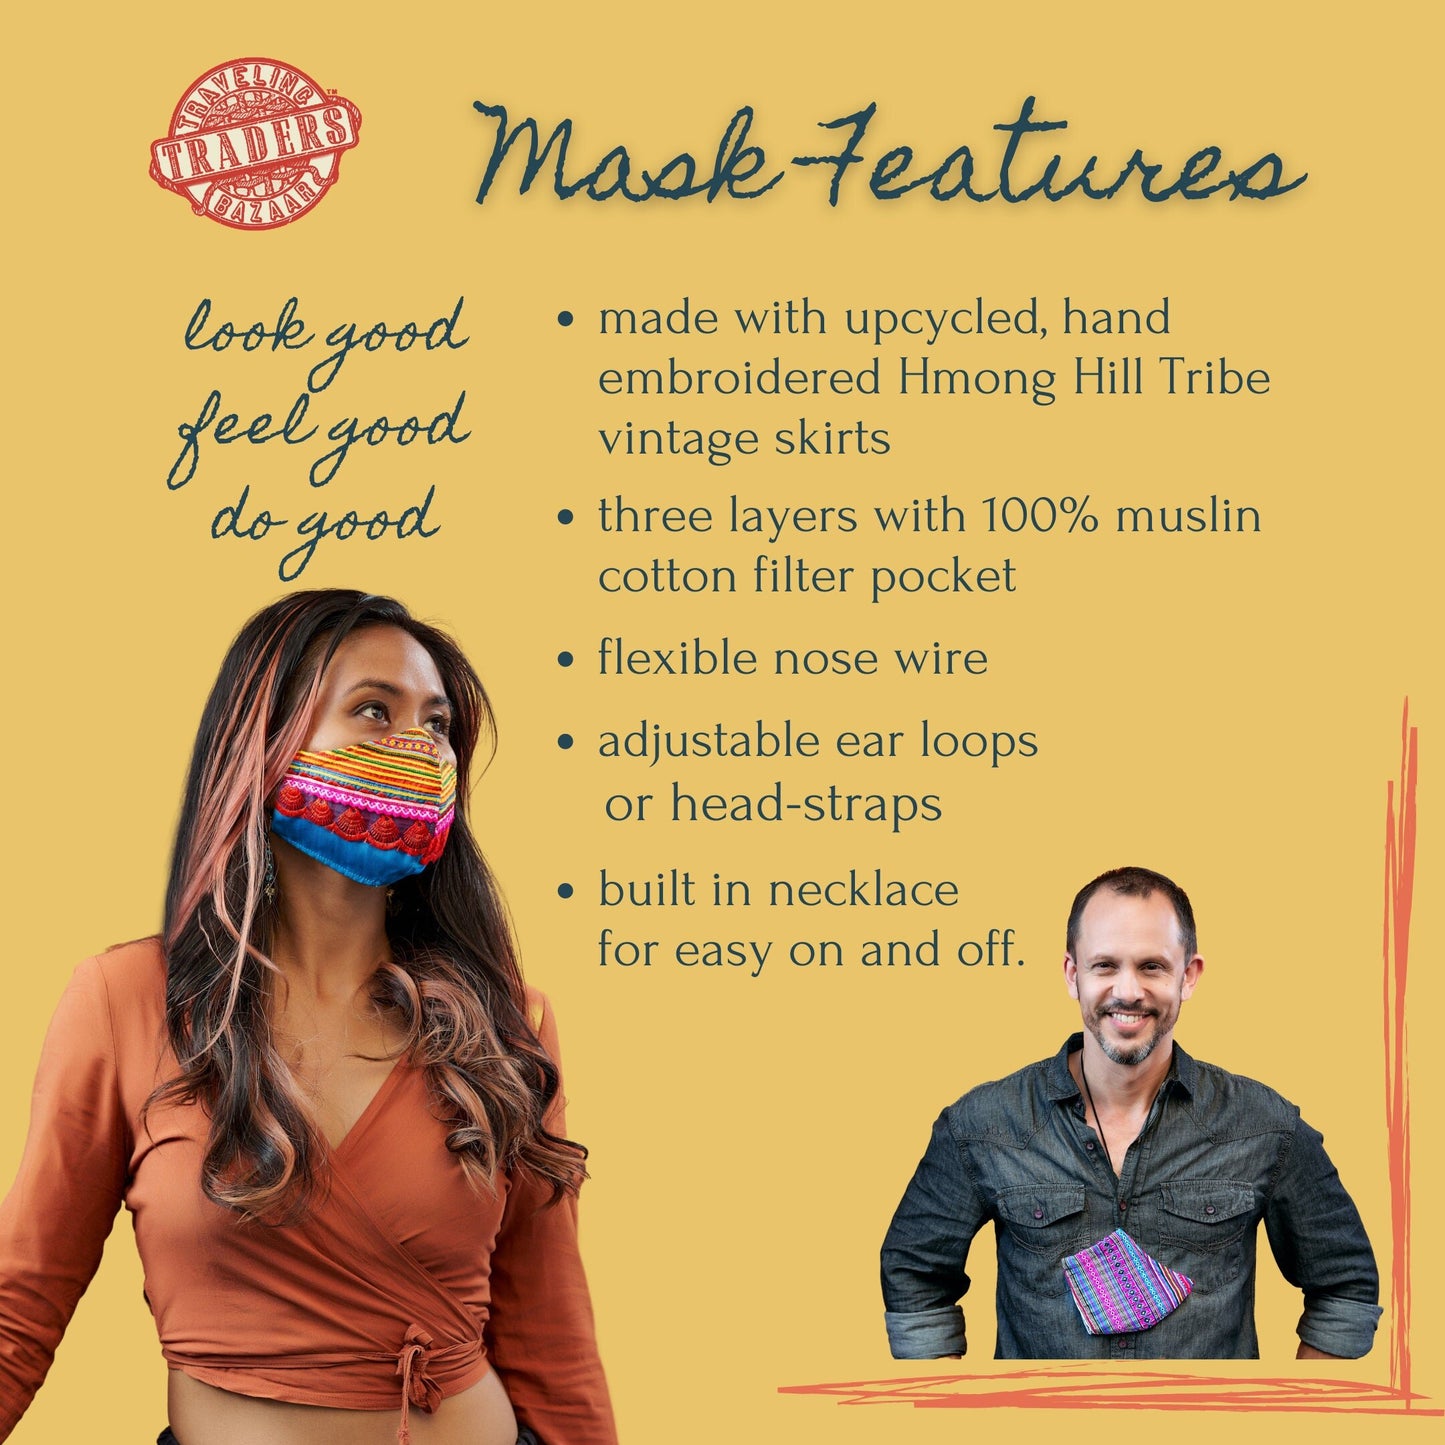 Artisan Face Mask & Essential Oil Mask Mist Set